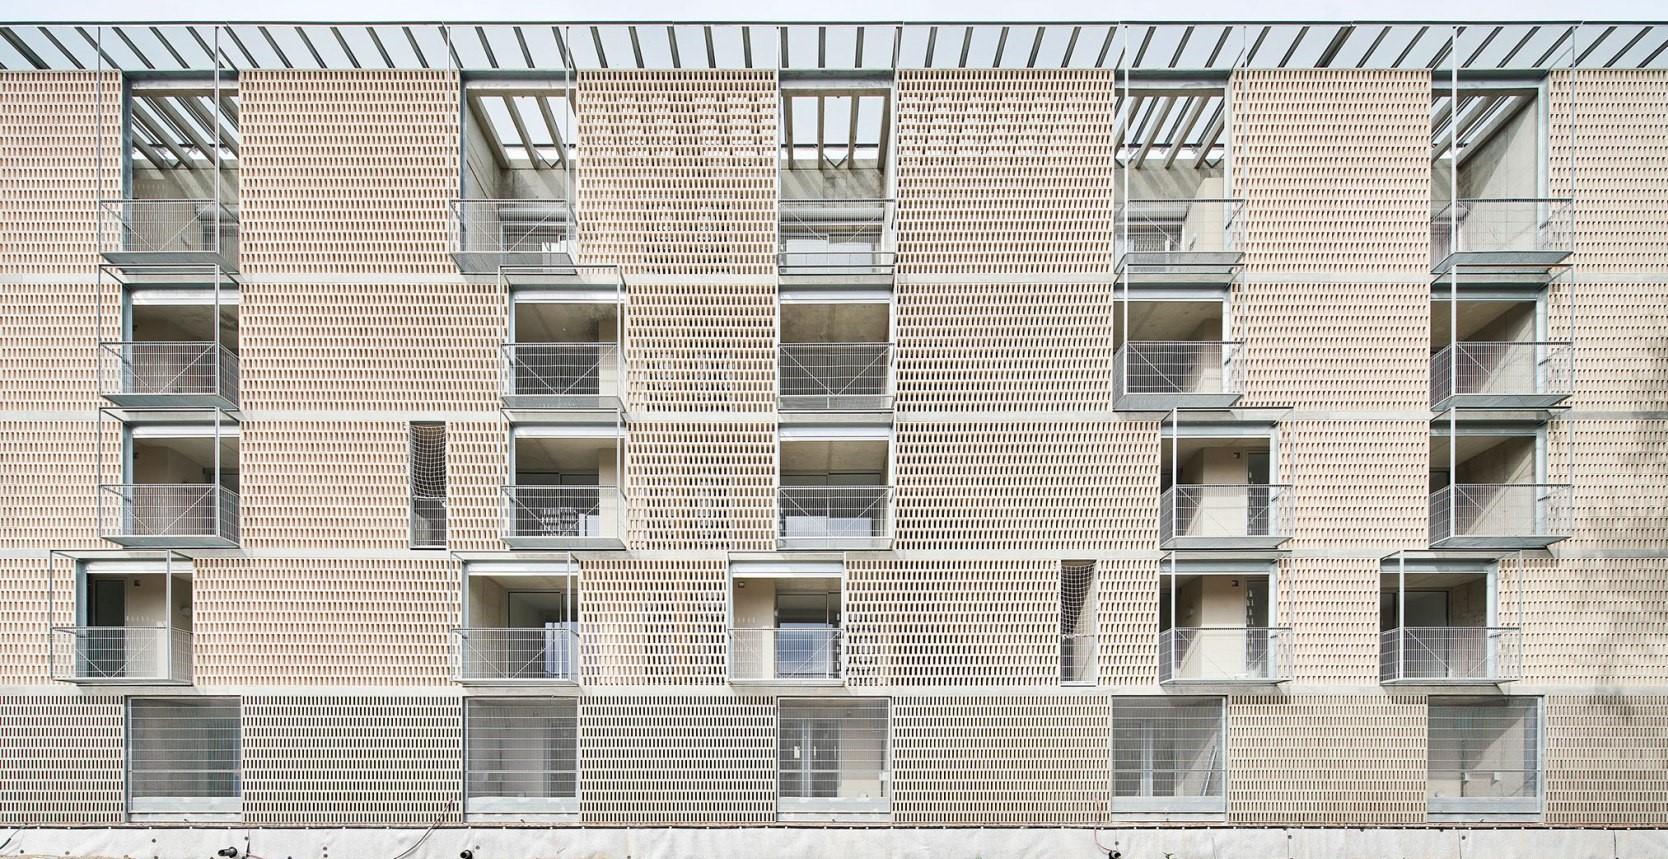 España: 54 viviendas sociales en Barcelona - Peris + Toral Arquitectes